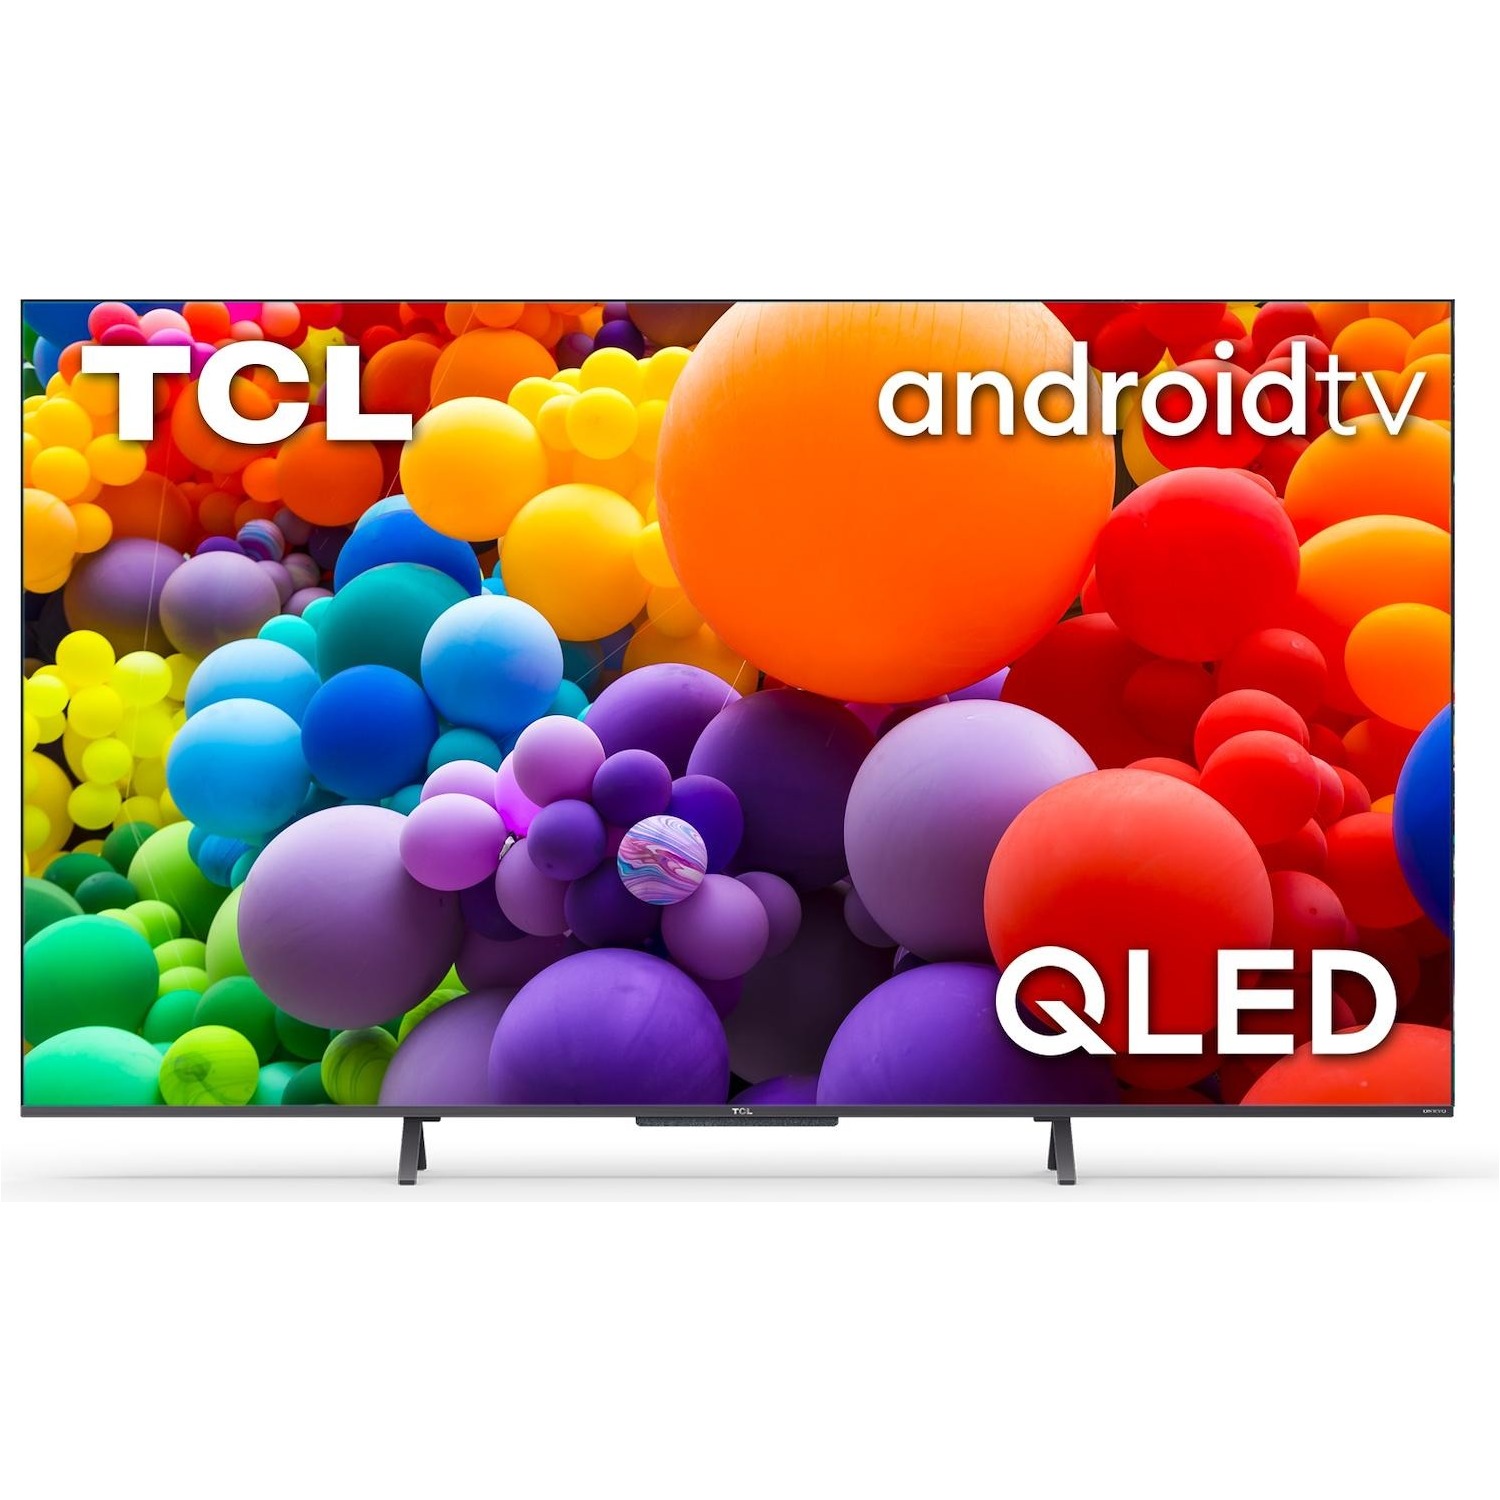 Immagine per TV LED Smart Android 4K UHD TCL 50C725 da DIMOStore